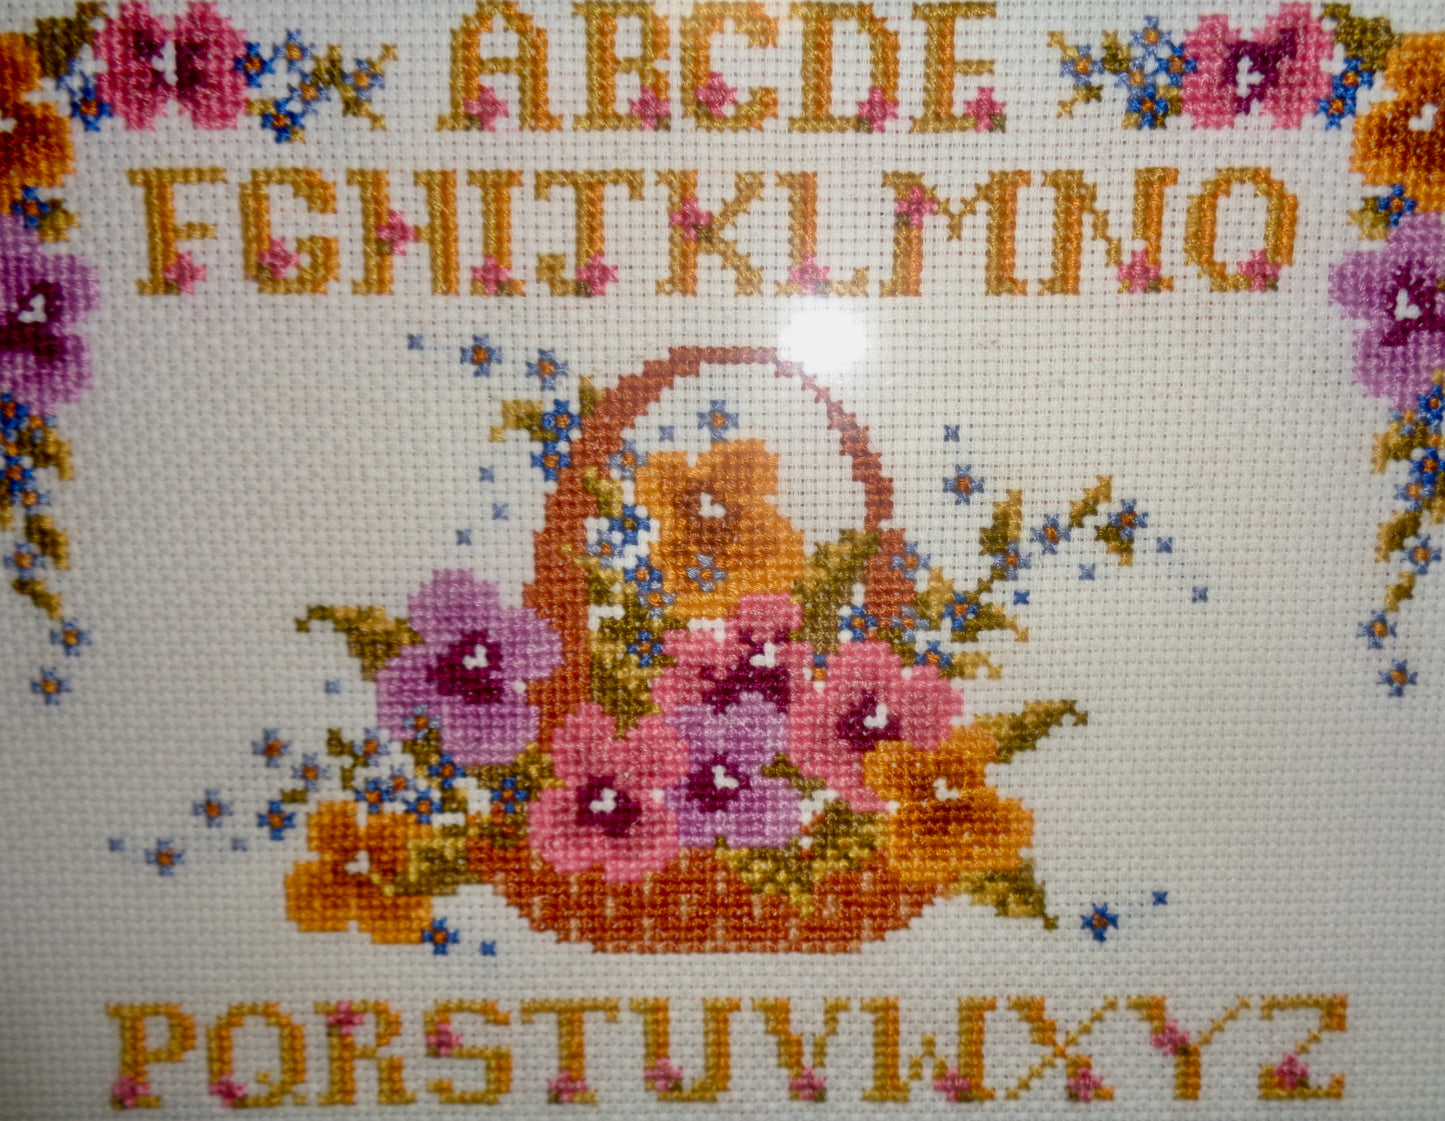 Framed Completed Floral Alphabet Cross Stitch Sampler